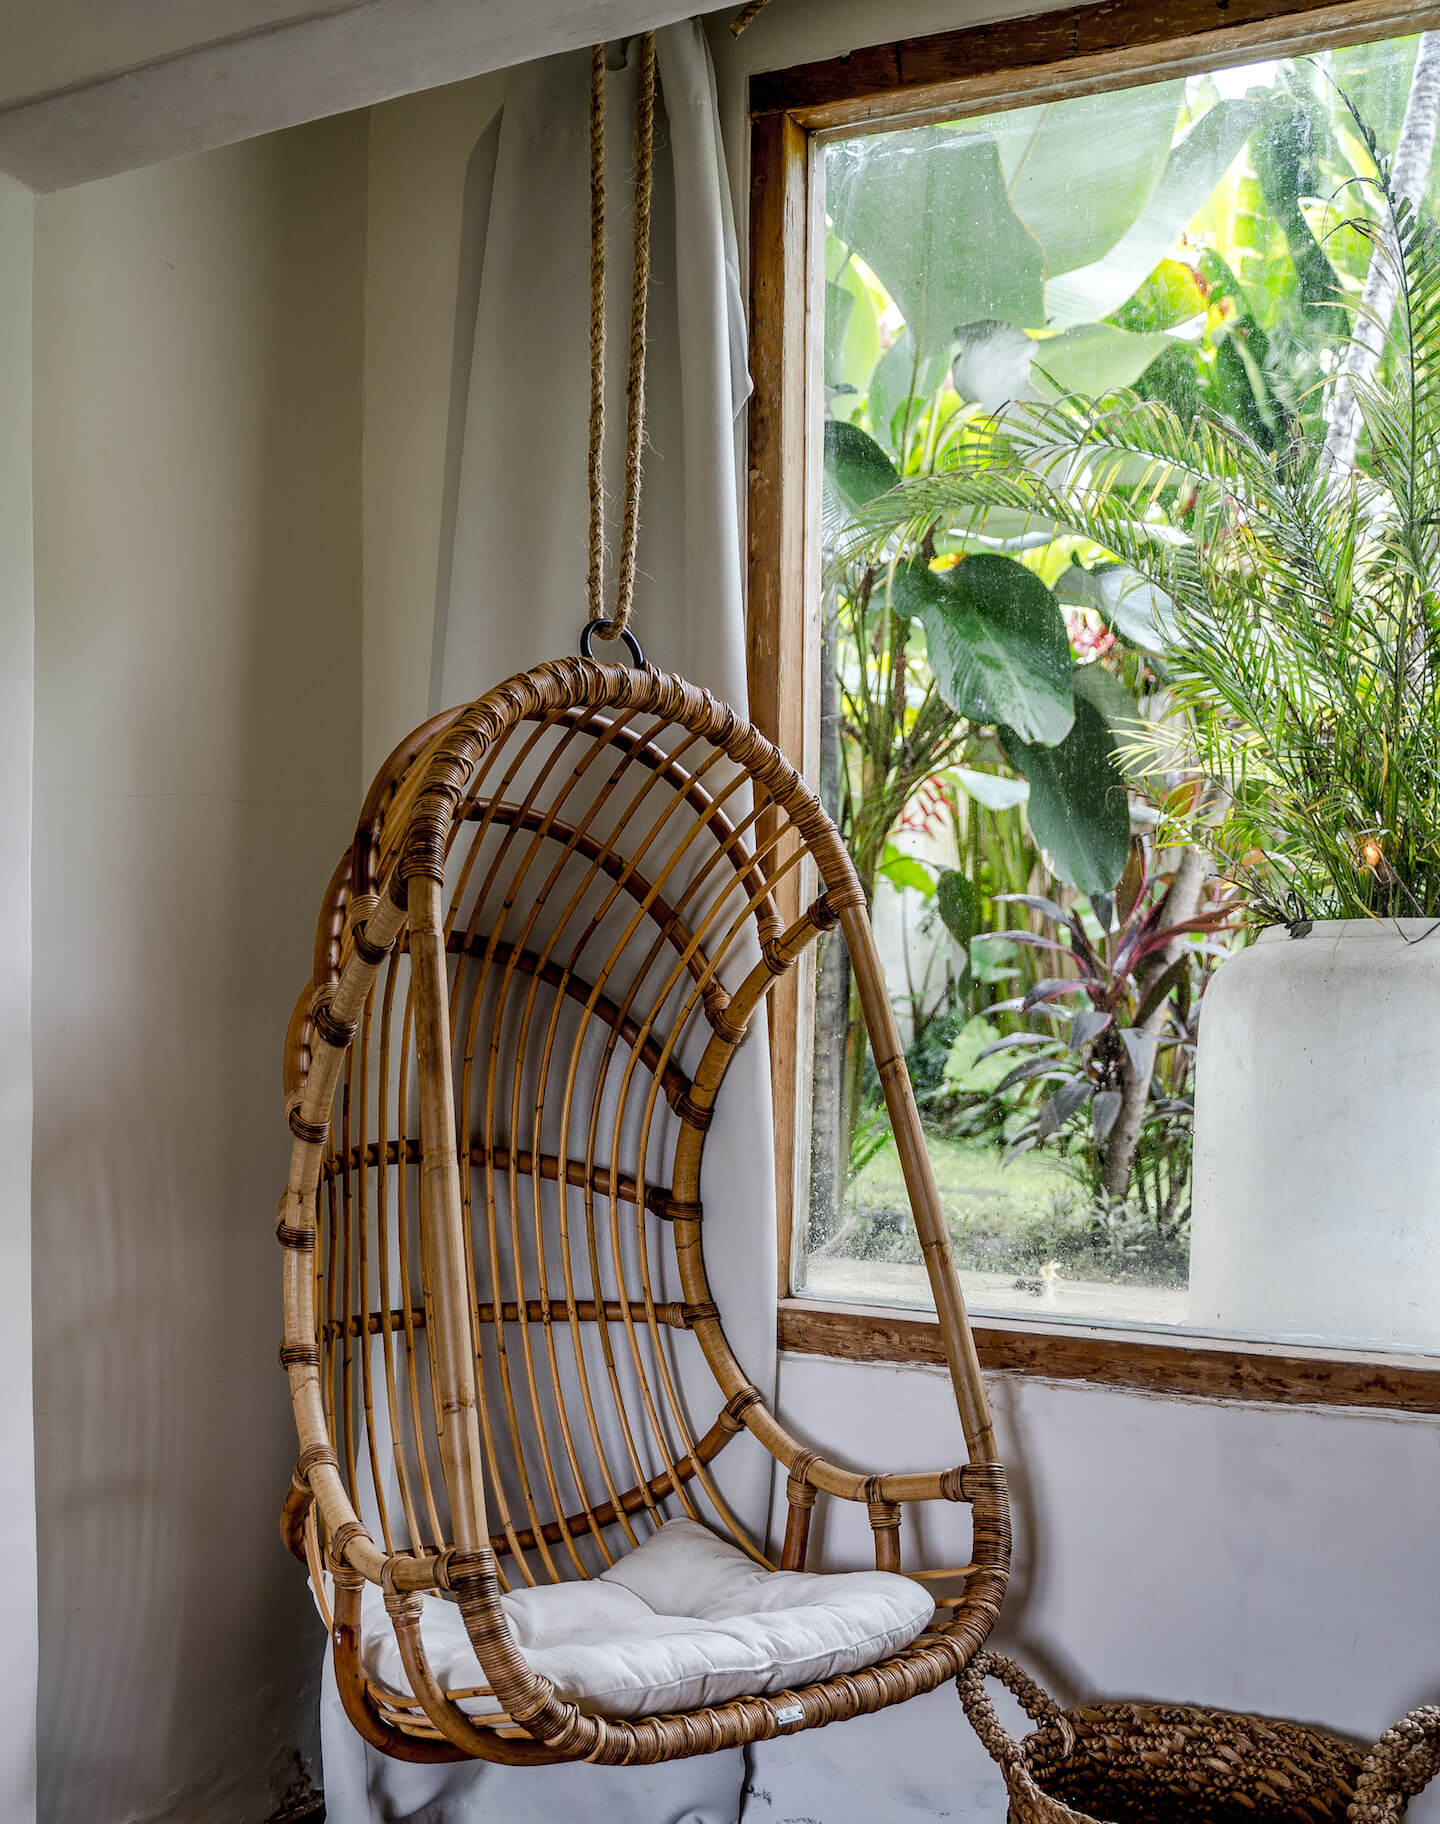 Hanging Chair Rattan - Rattan Furniture - Monnarita - handmade furniture